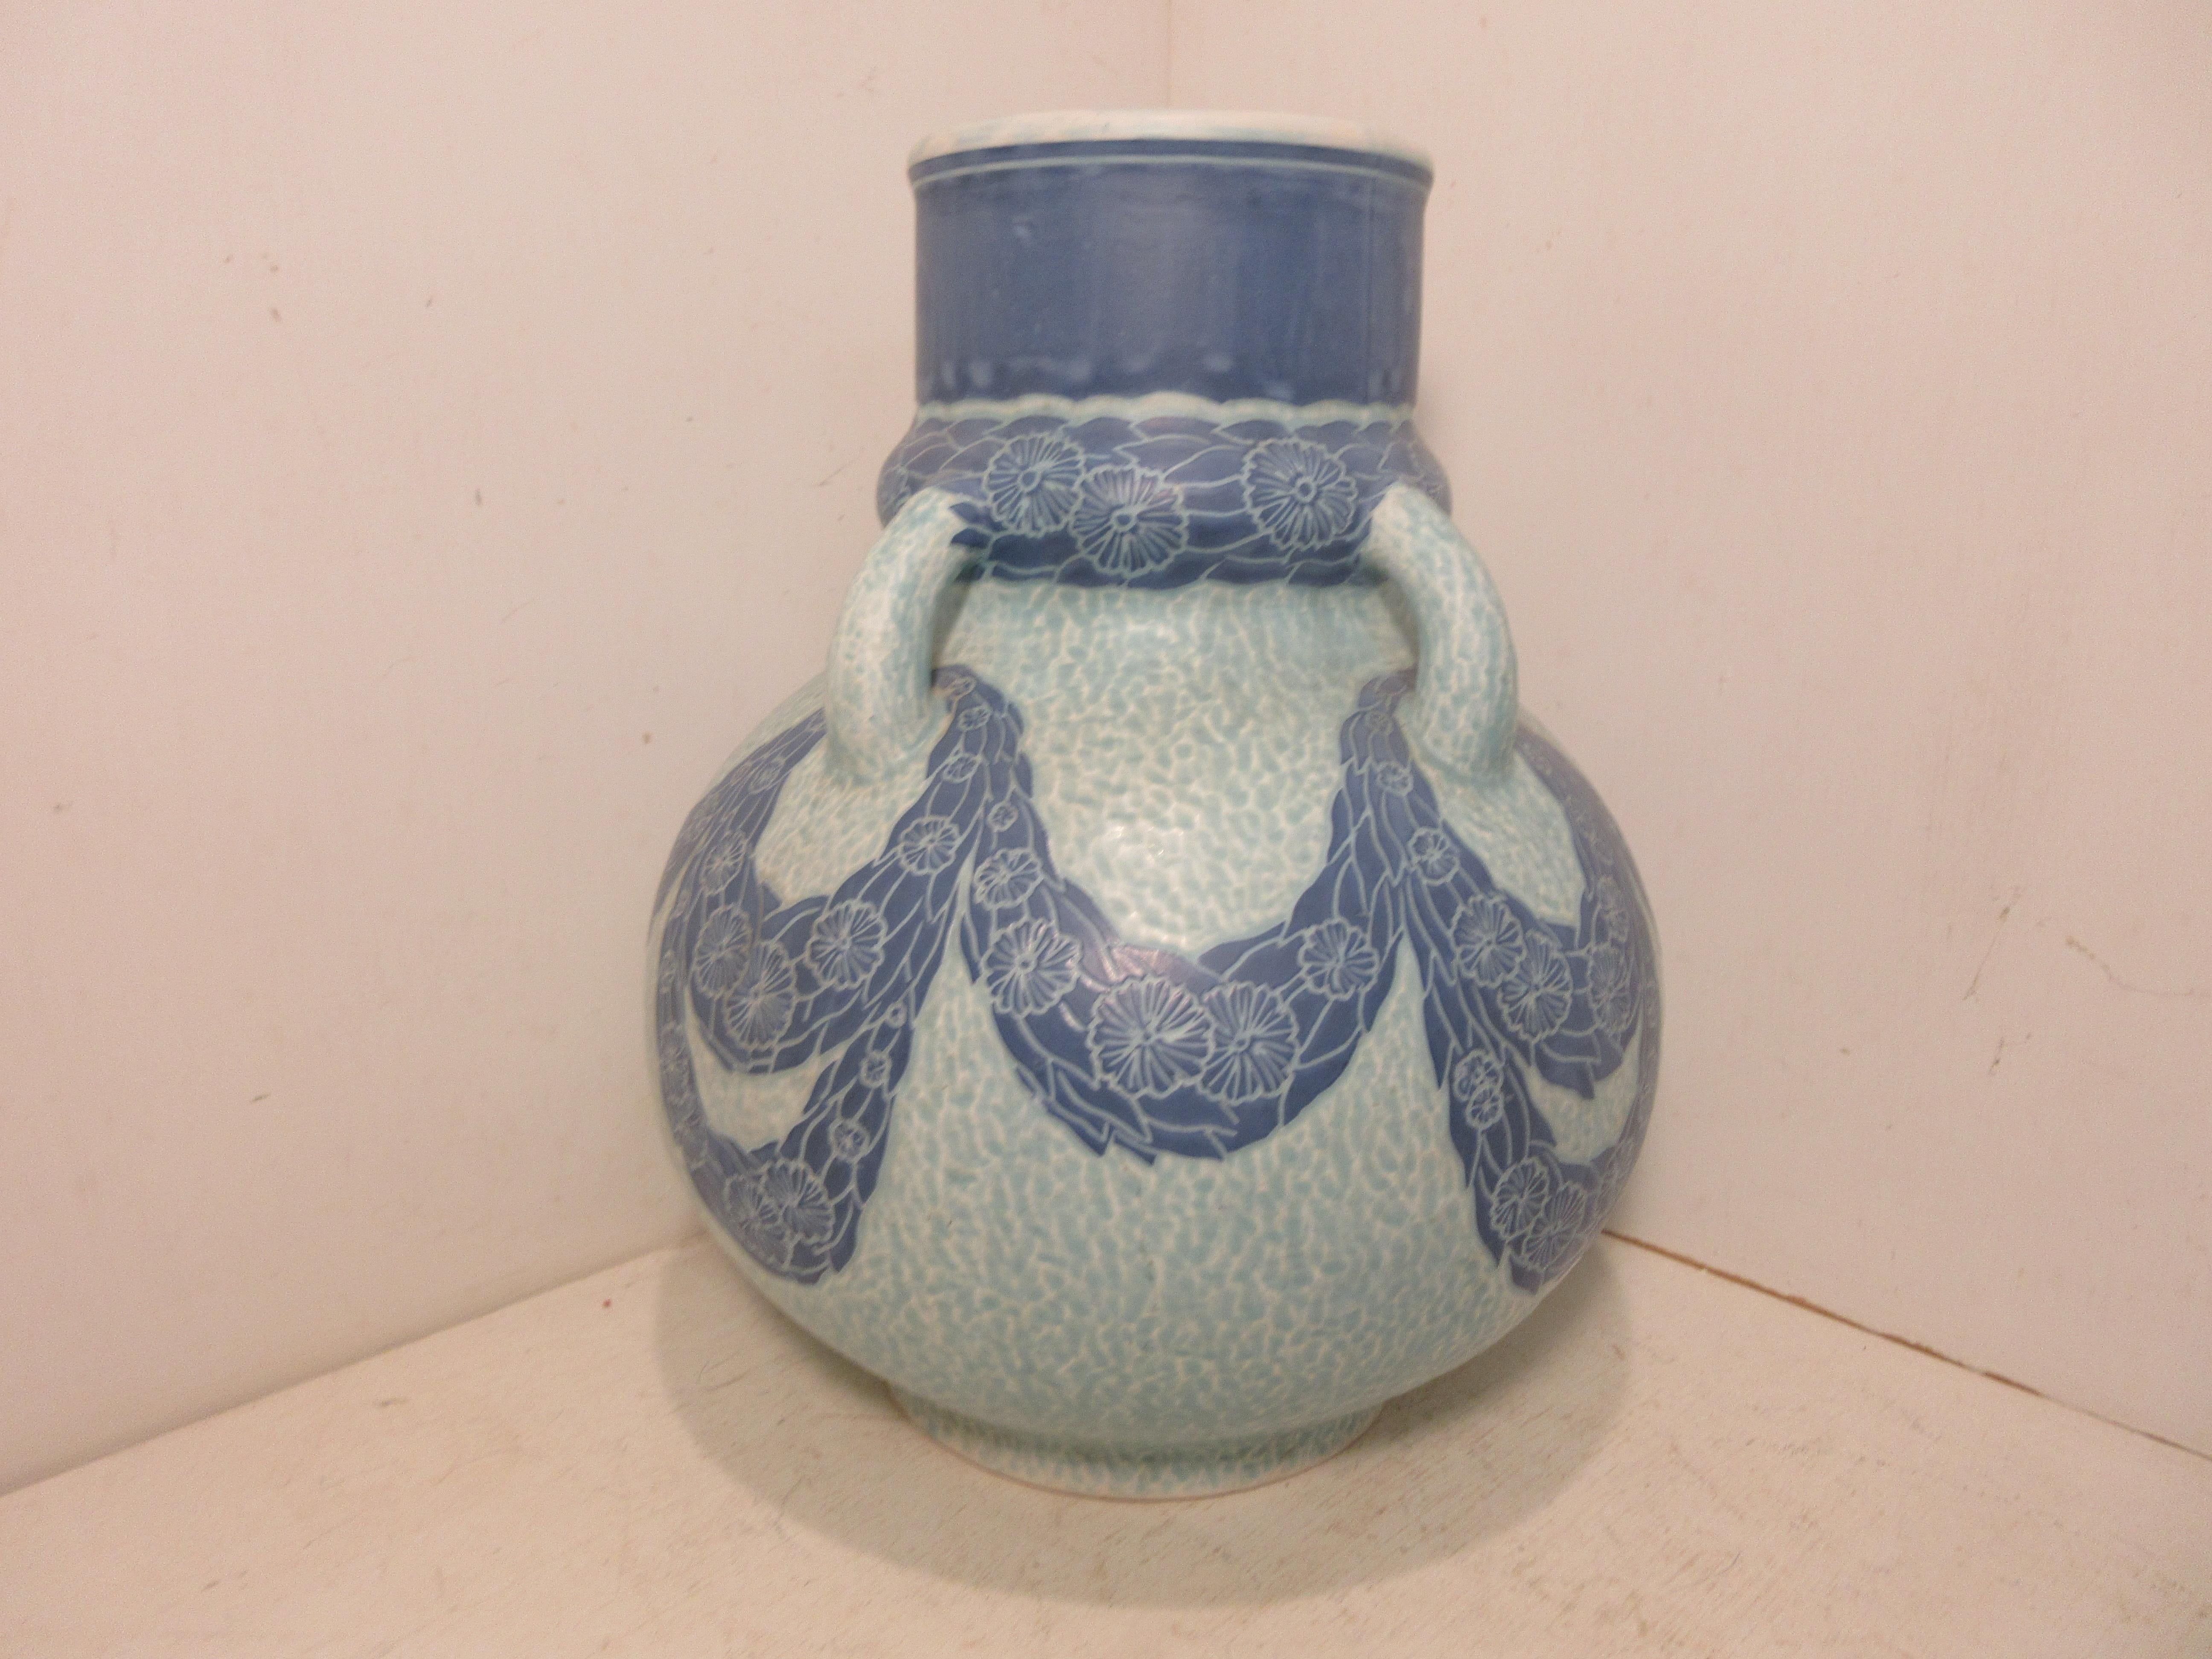 Dies ist eine handgefertigte Sgraffito-Vase (1 Stück) des schwedischen Keramikkünstlers Josef Ekberg aus dem Jahr 1916. Zu dieser Zeit war er einer der besten schwedischen Keramikkünstler. Er arbeitete von 1898 bis zu seinem Tod im Jahr 1945 in der